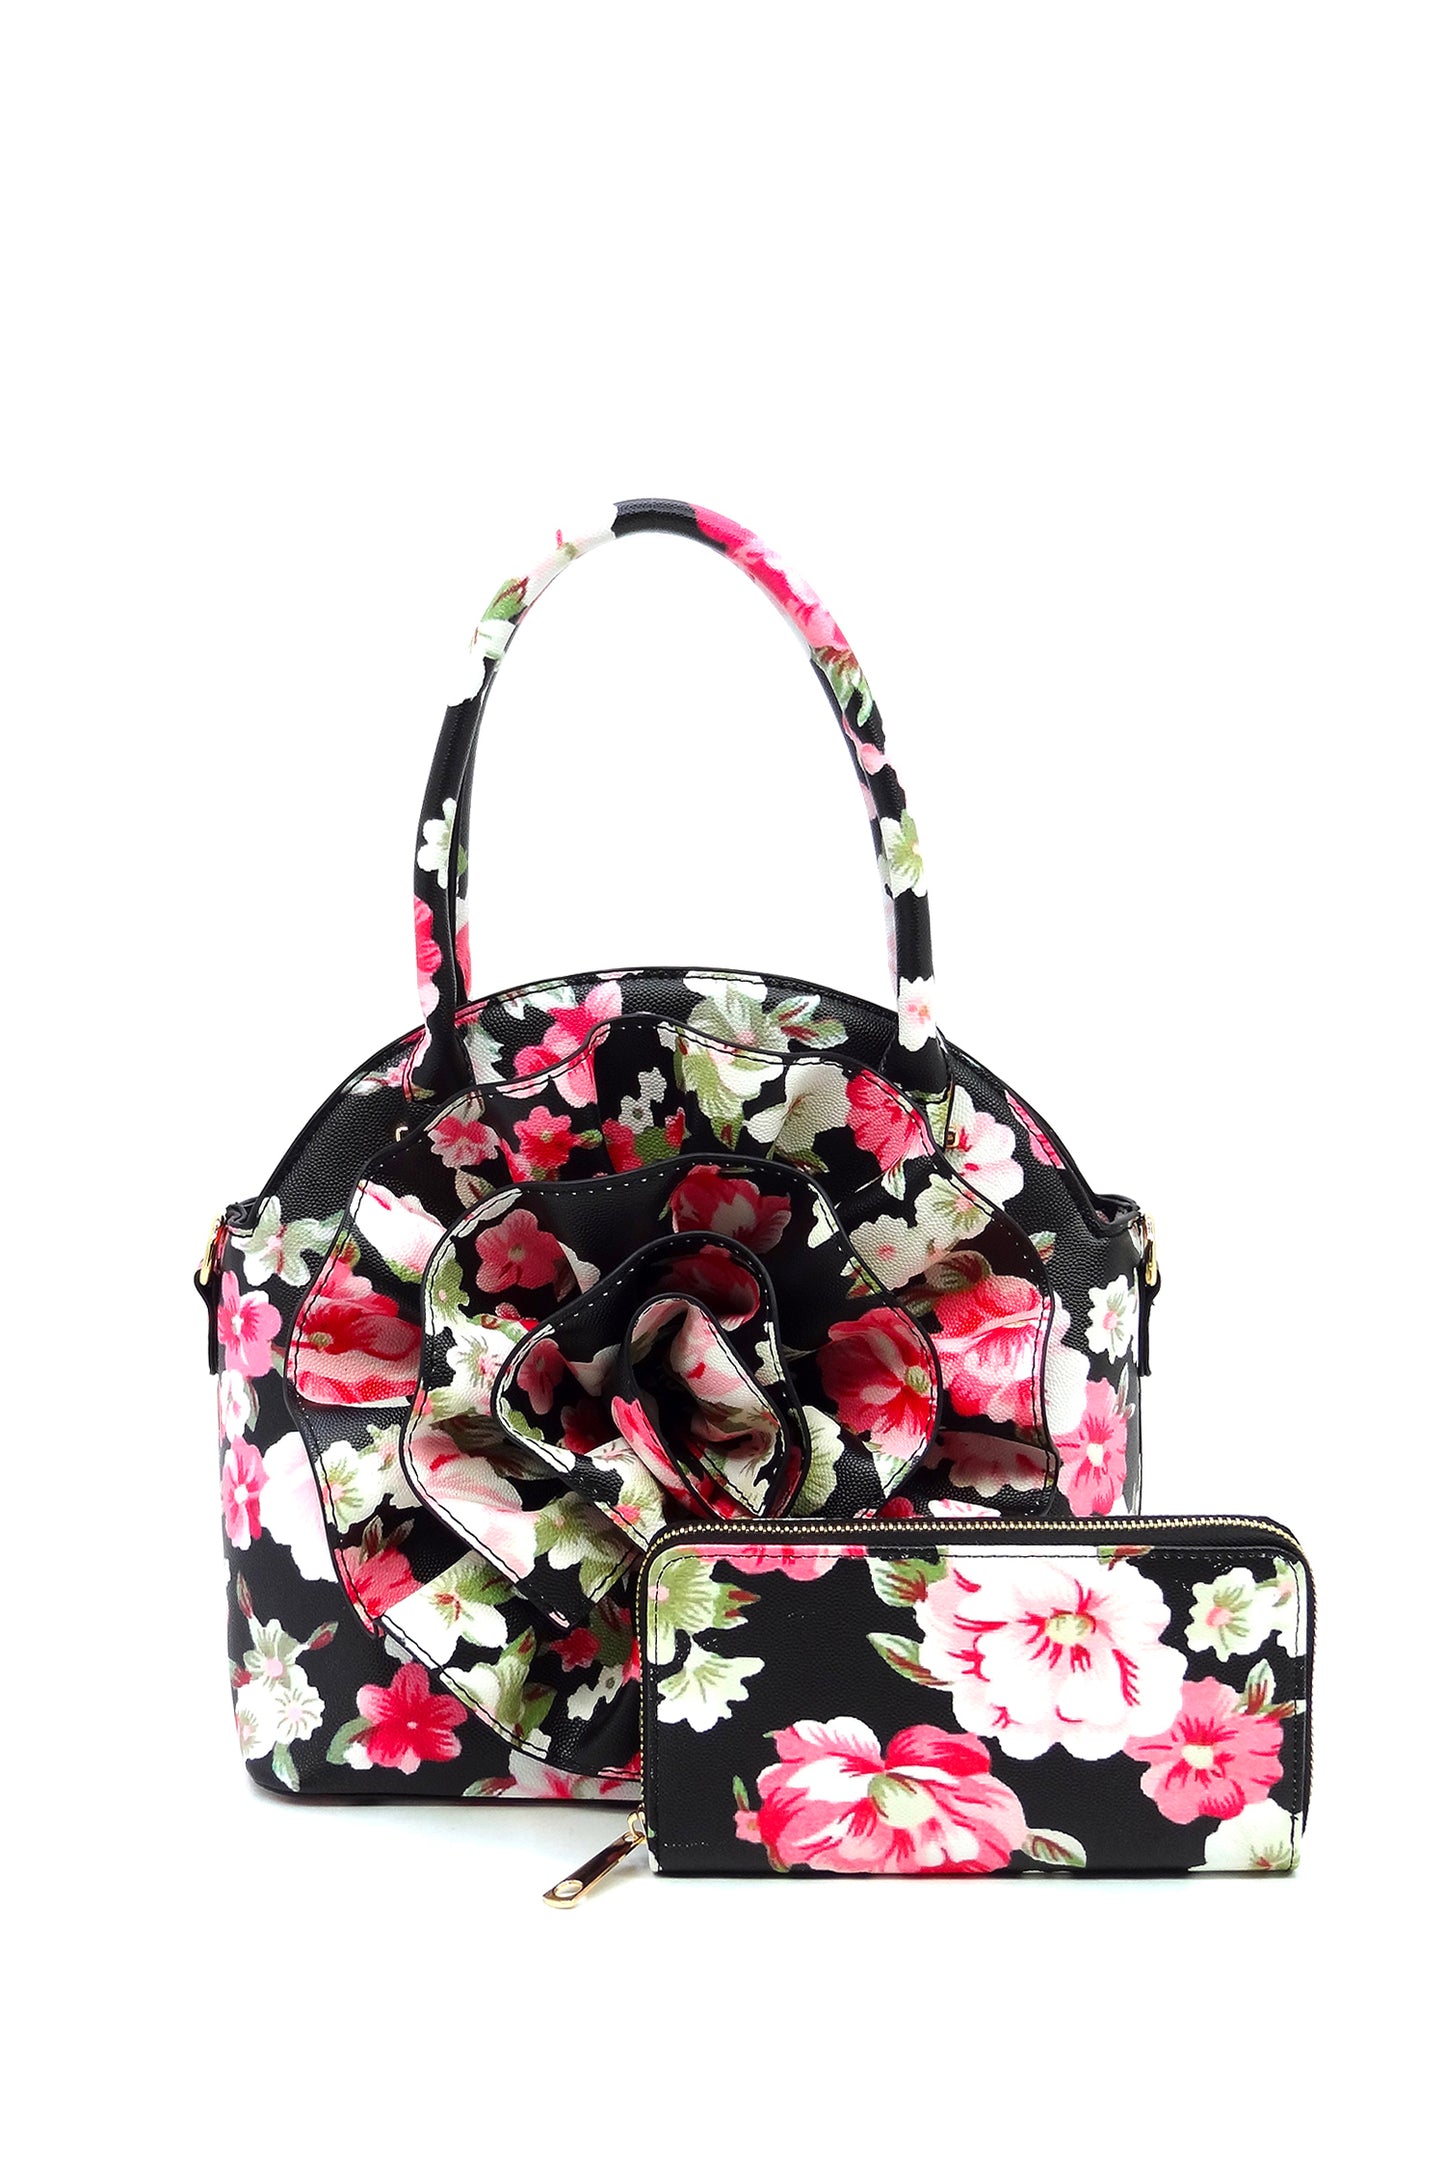 Ladies Fashionable Hand/Shoulder Bag 3-Piece Set-Merry & Joyous Store